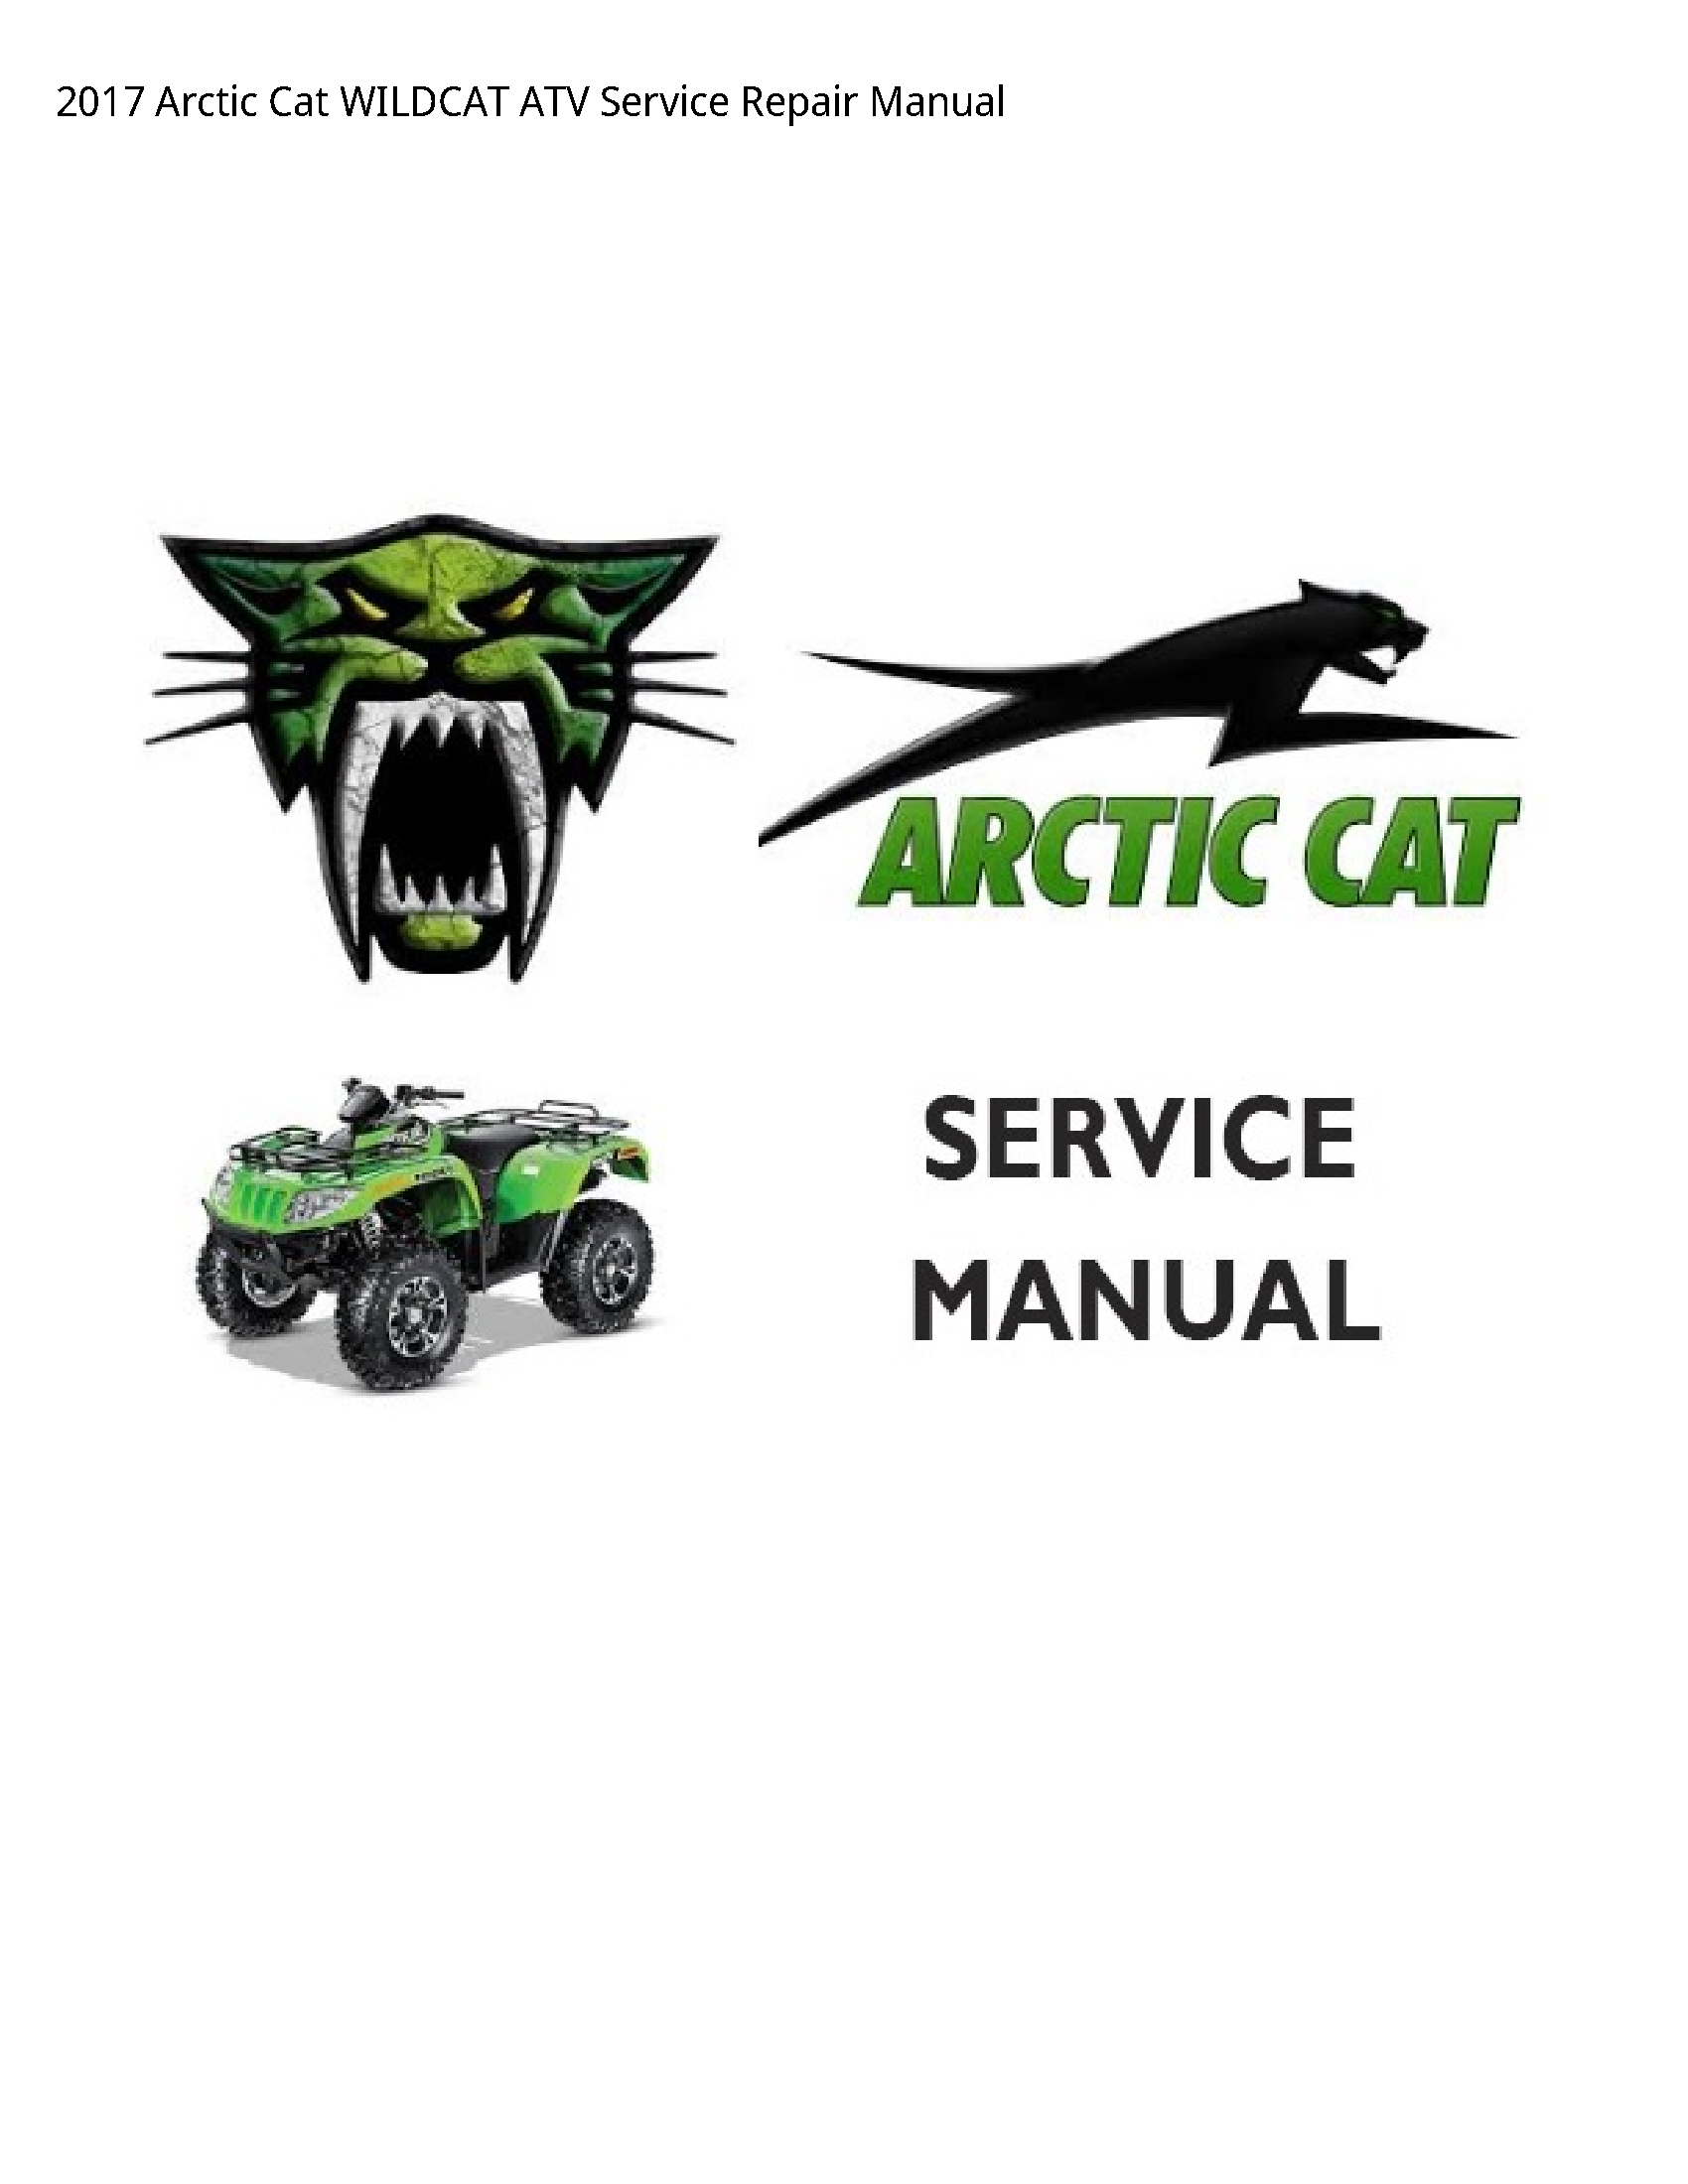 Arctic Cat WILDCAT ATV manual